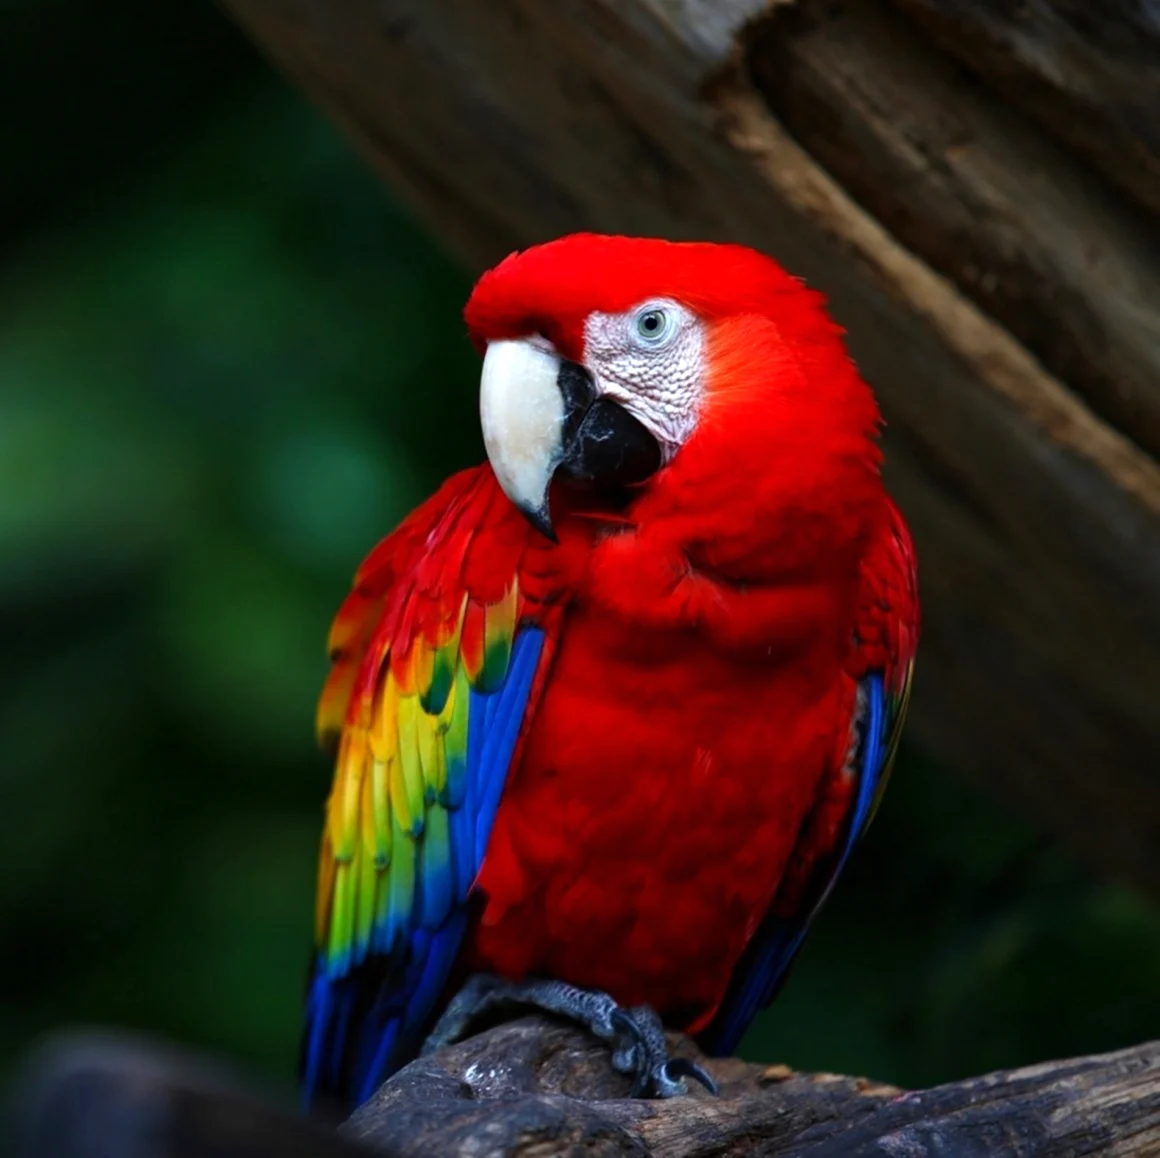 Амазон попугай красный. Красивое животное